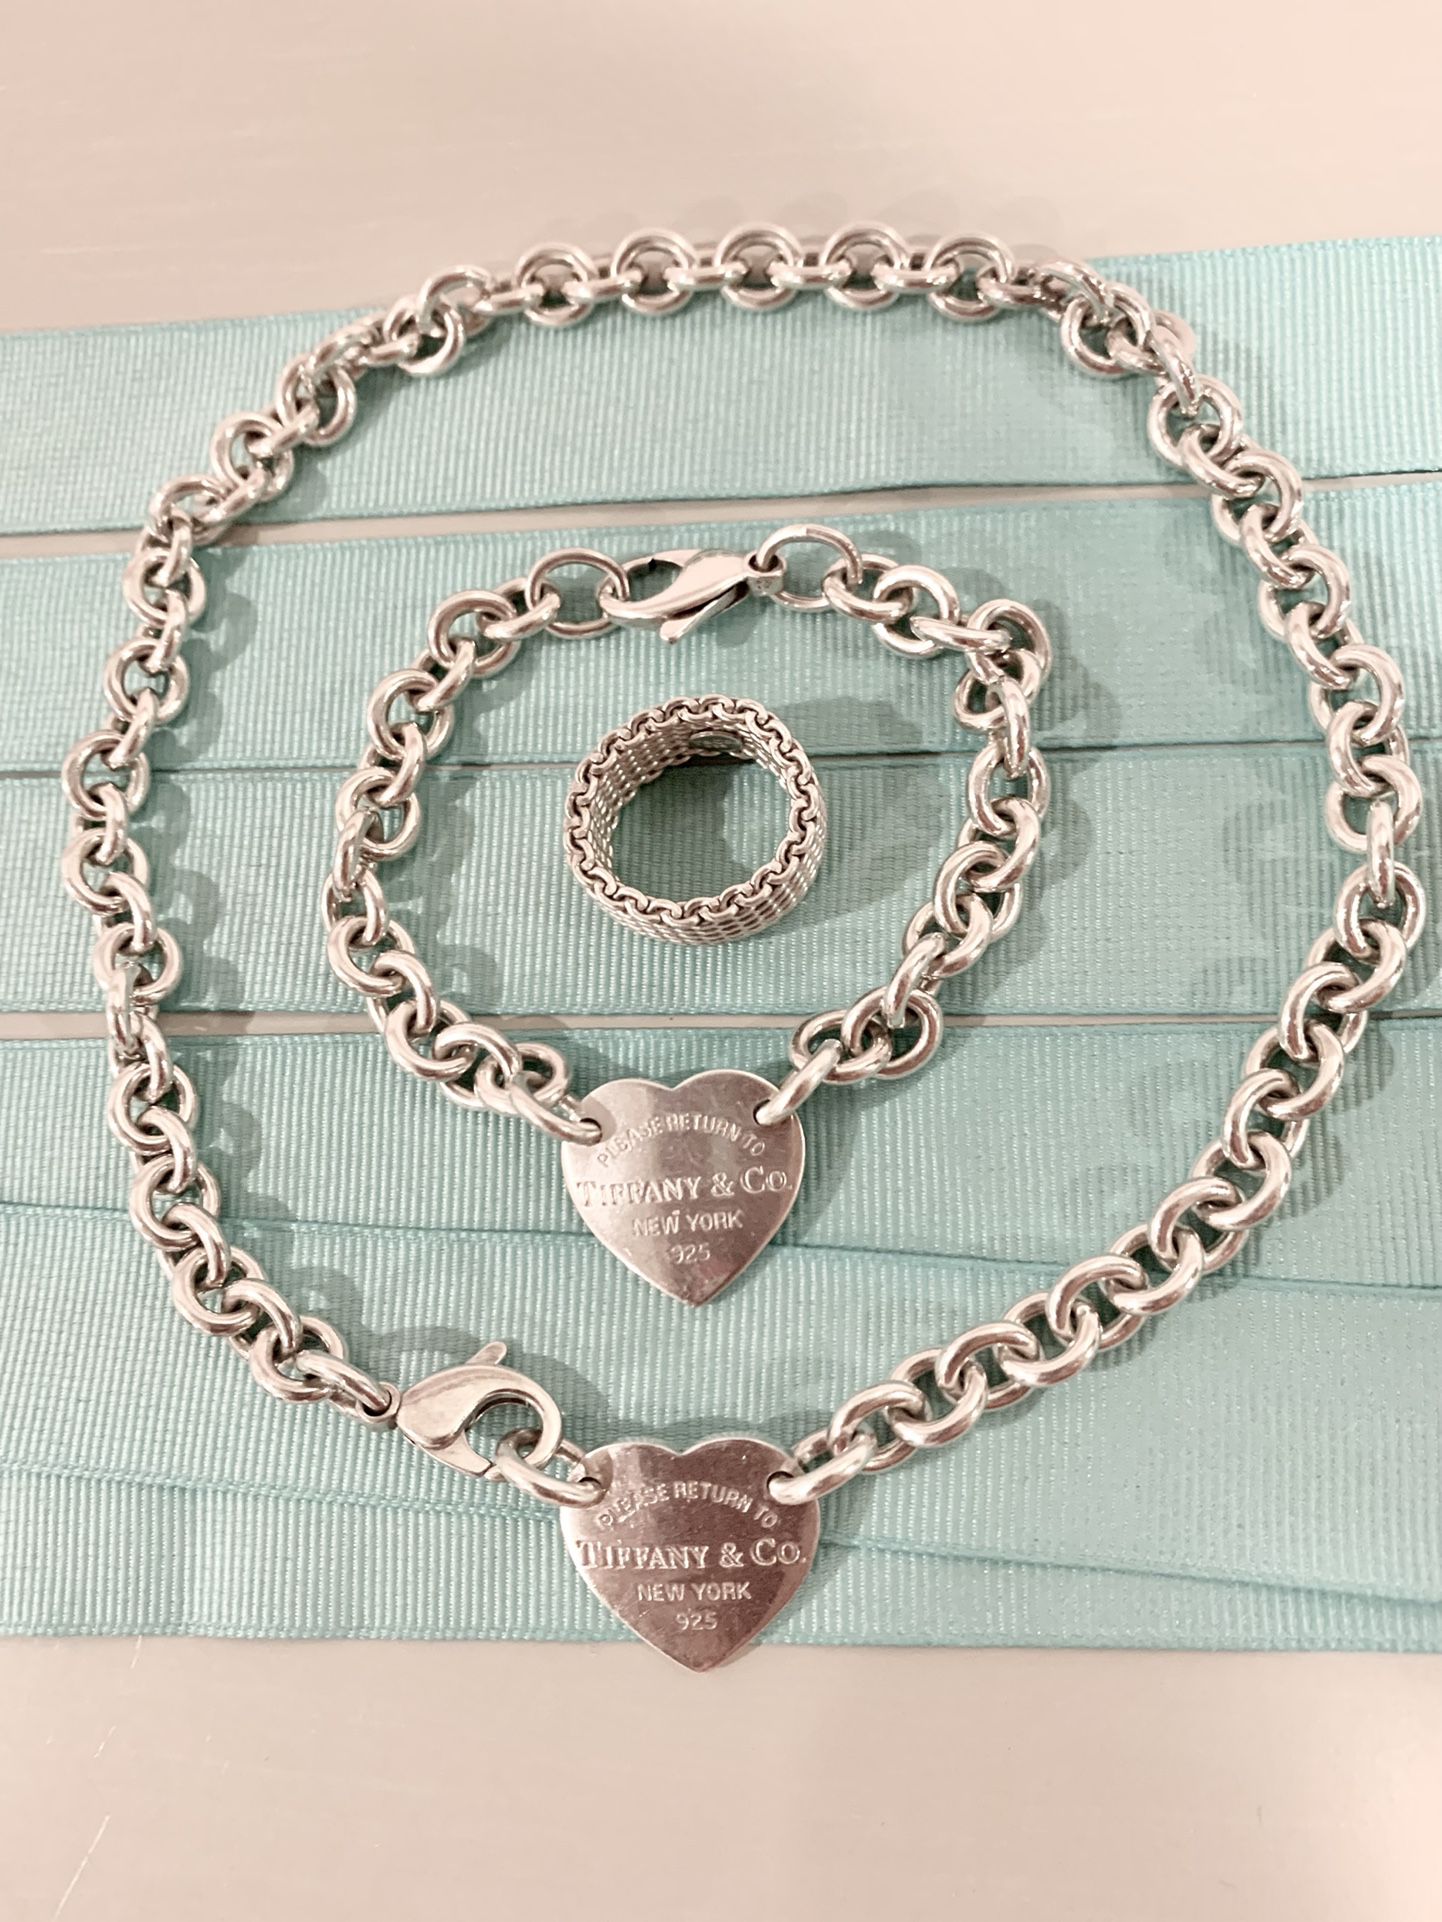 Estate Sale - Tiffany’s Silver Jewelry